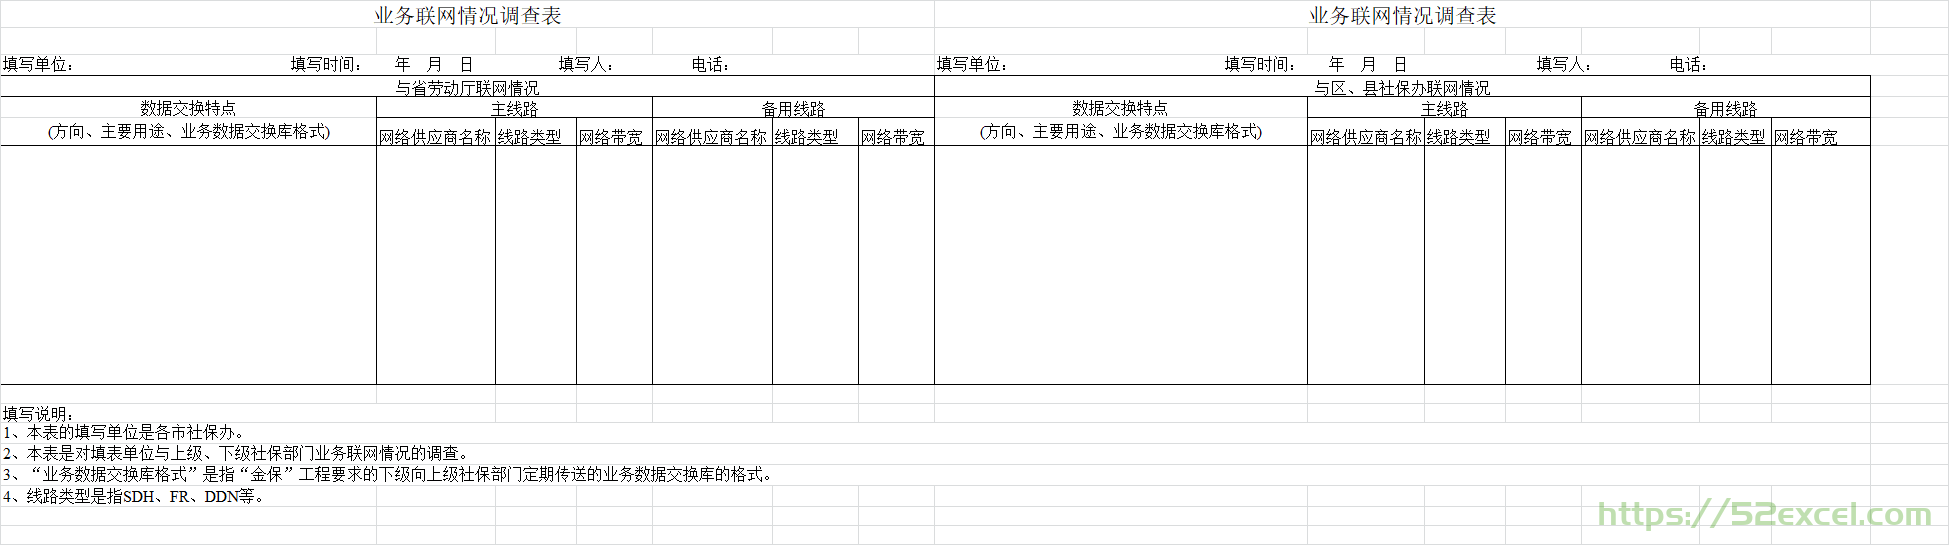 业务联网情况调查表Excel模板.png